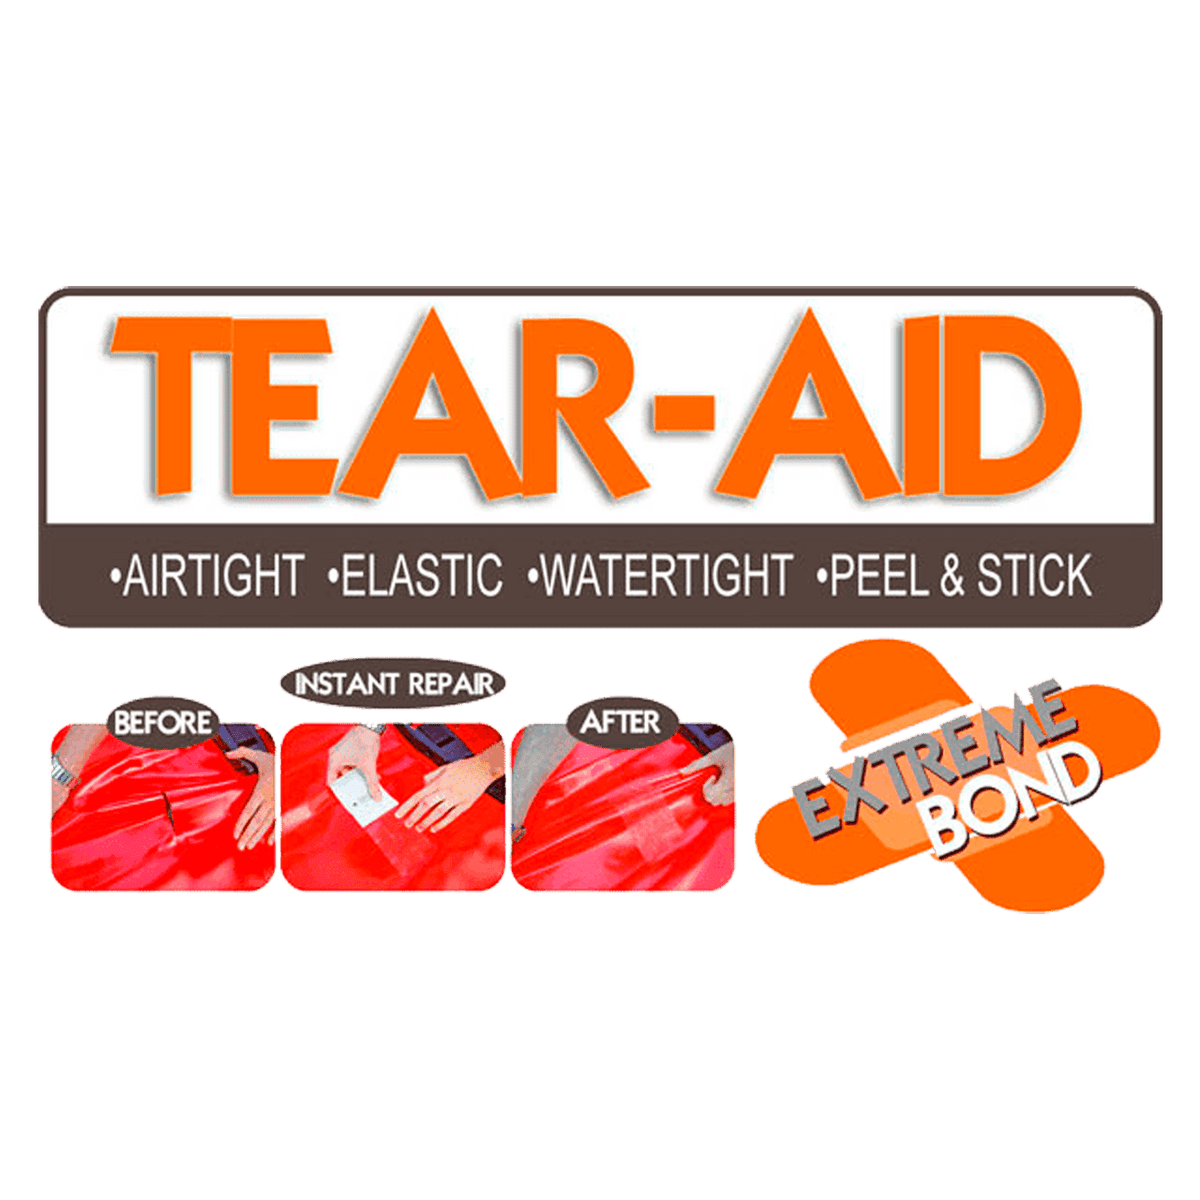 Tear-Aid Repair Set